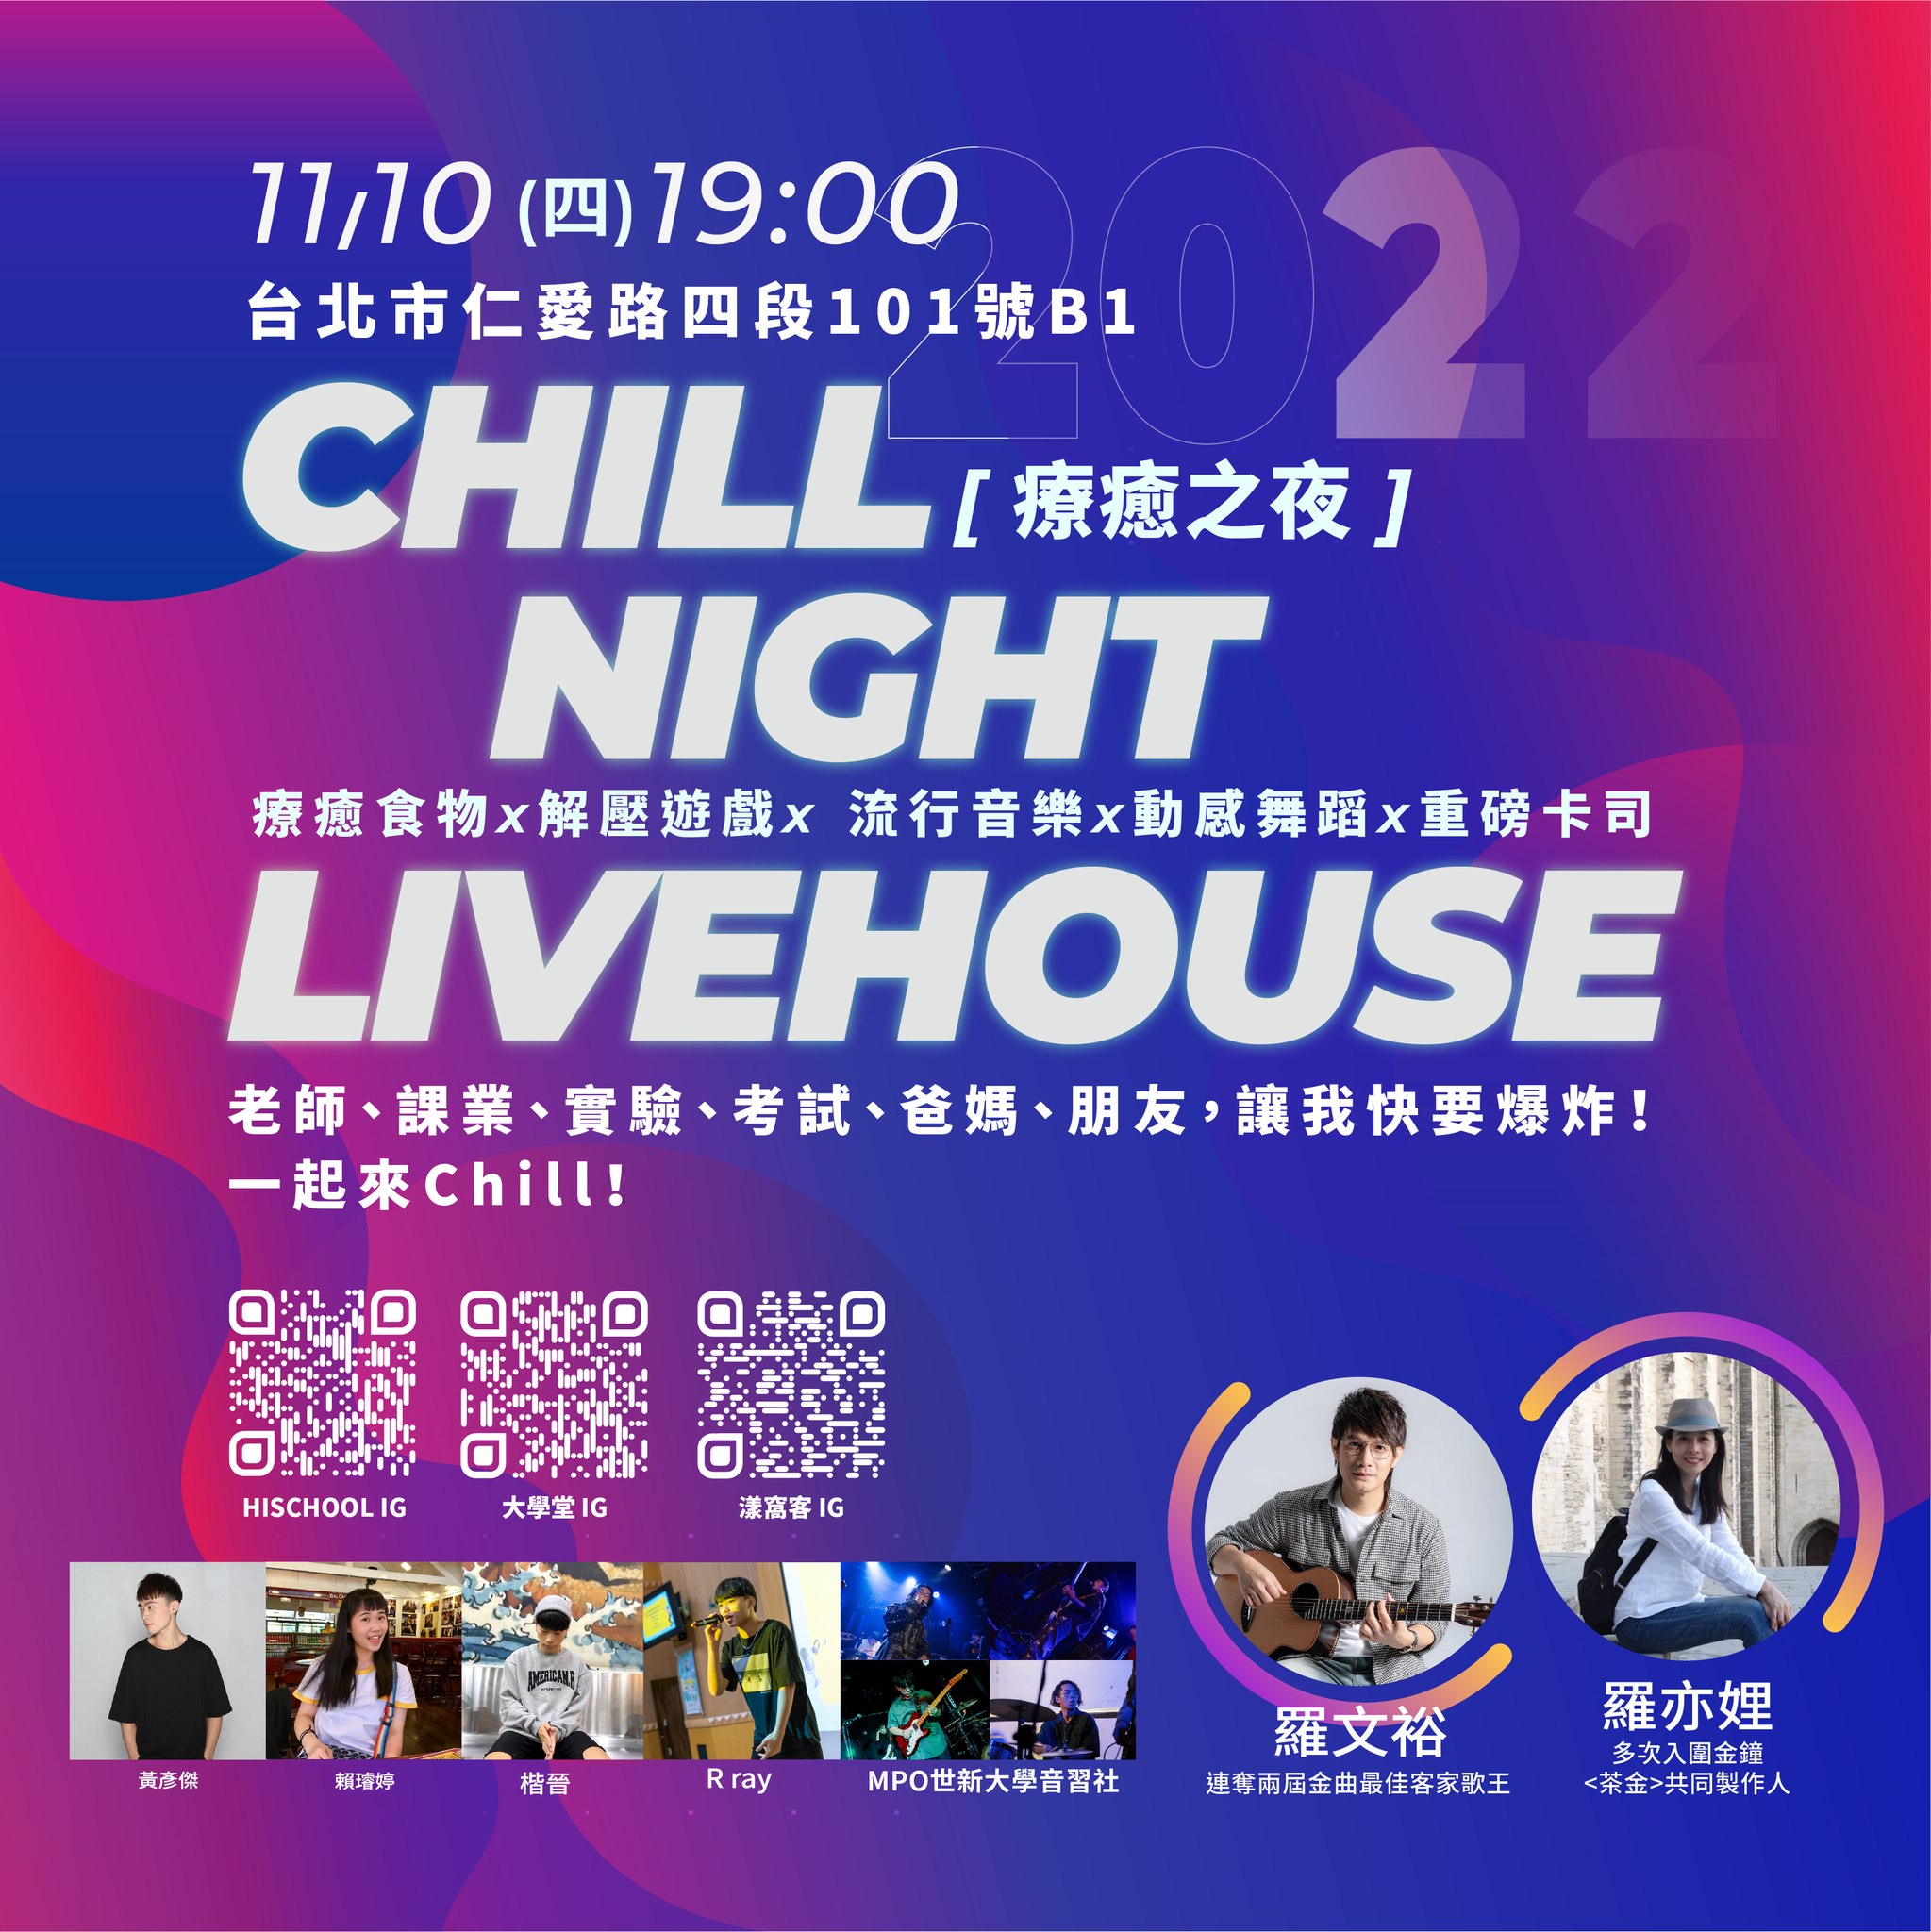 【療癒之夜 Chill Night Live House】